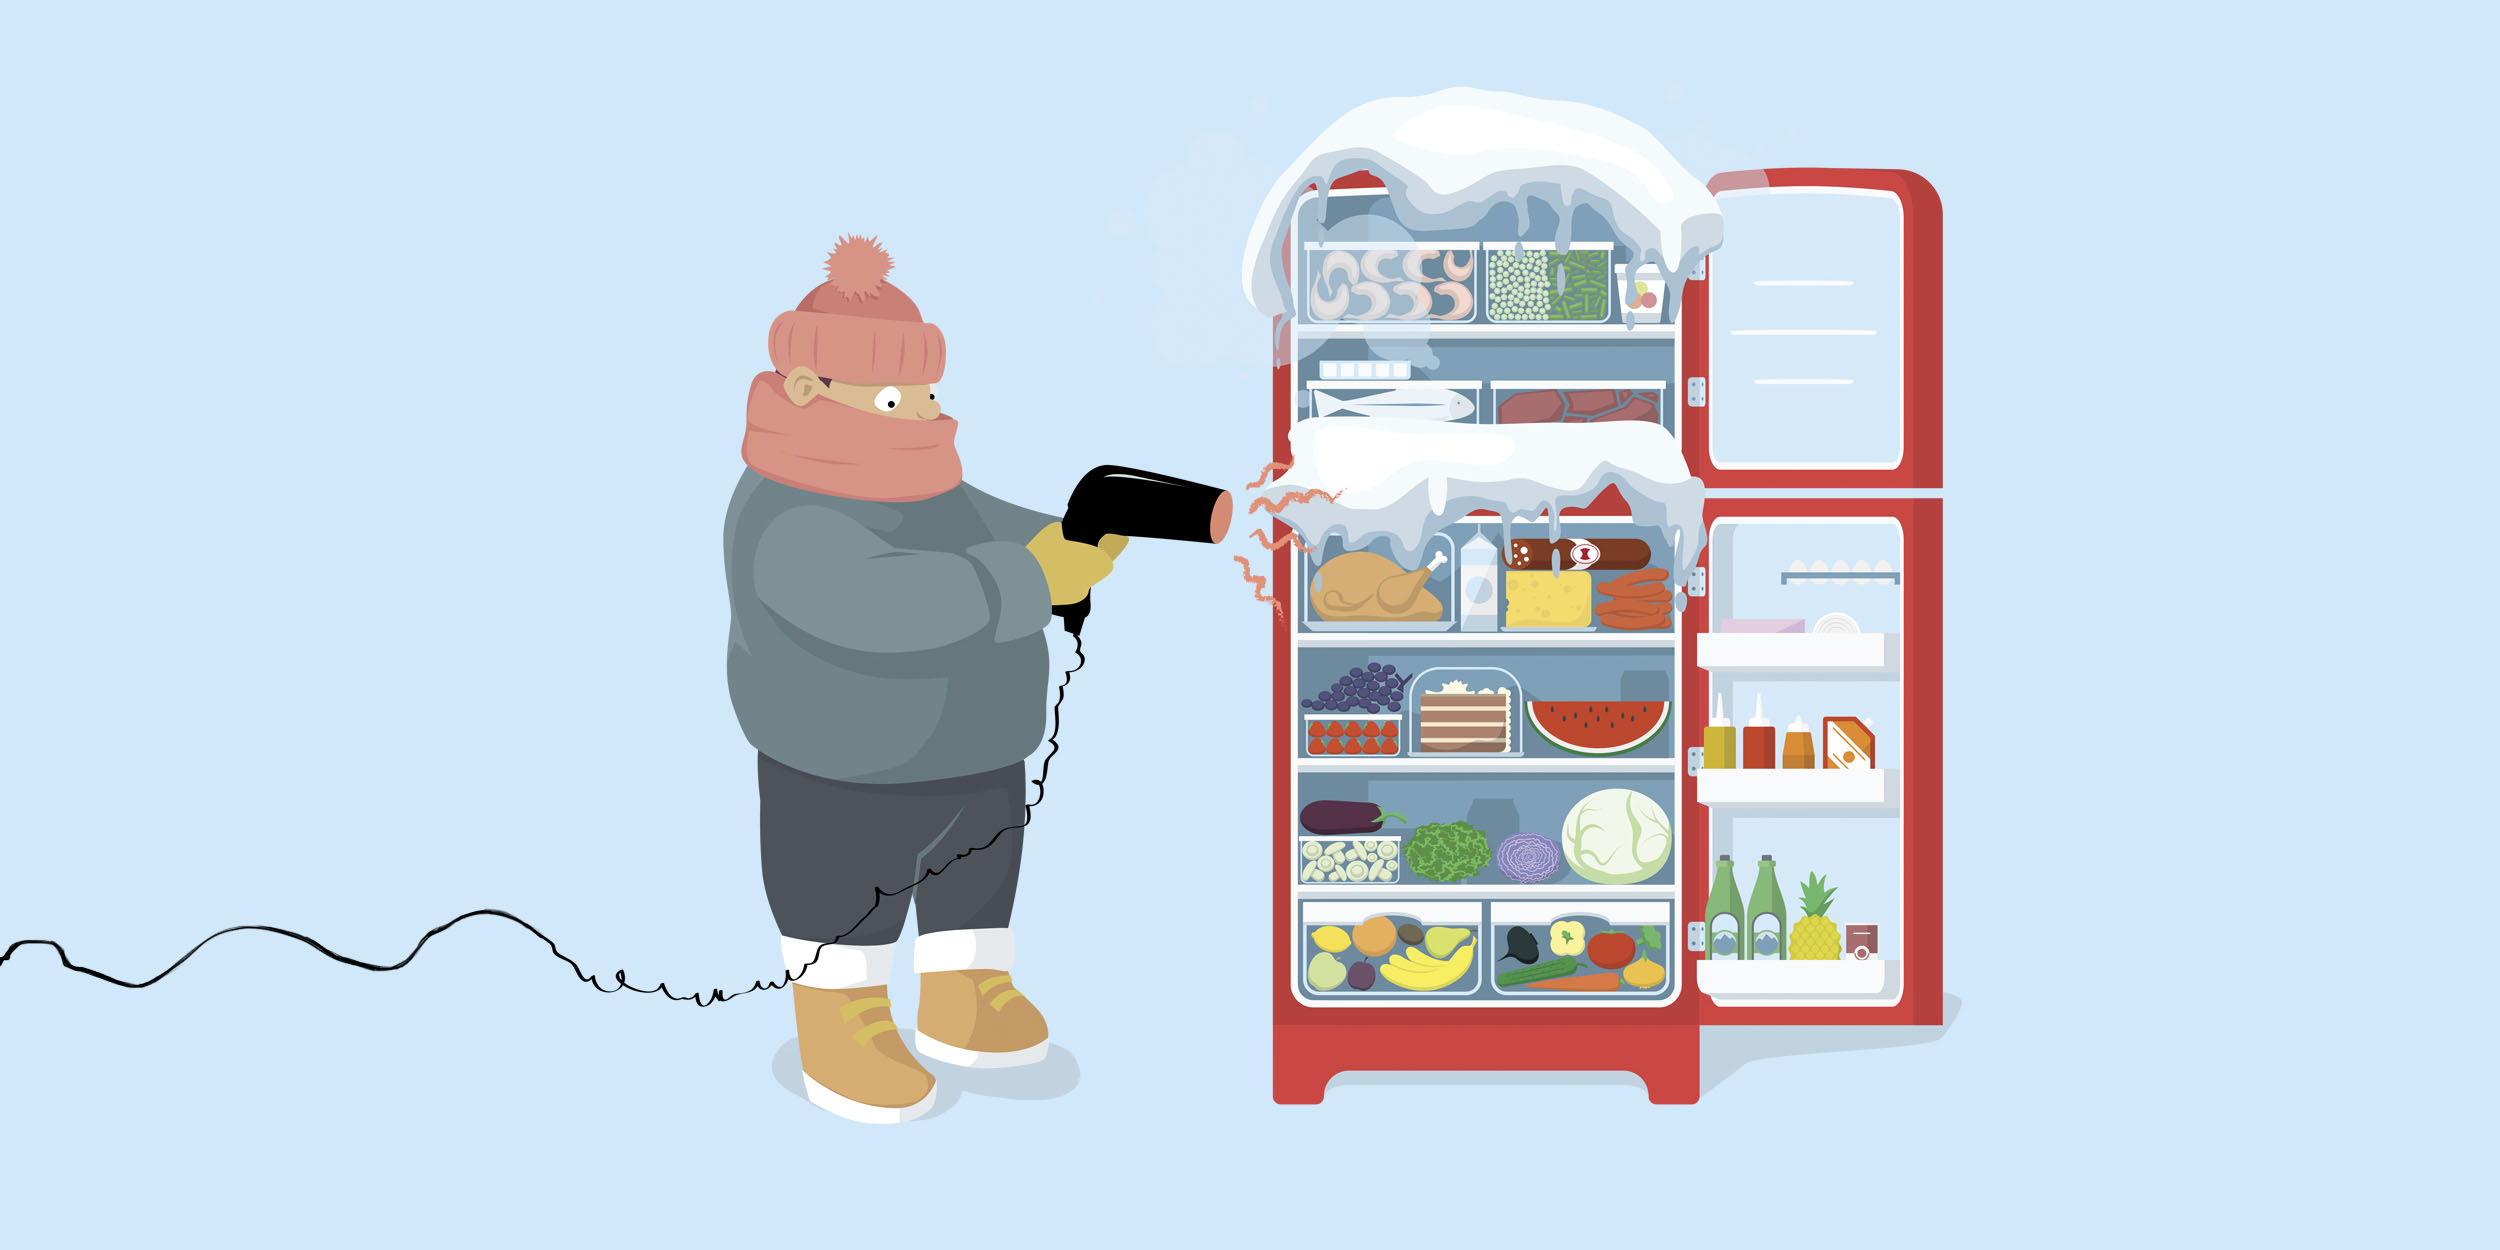 Морозилка в холодильнике не морозит – в чем причина?